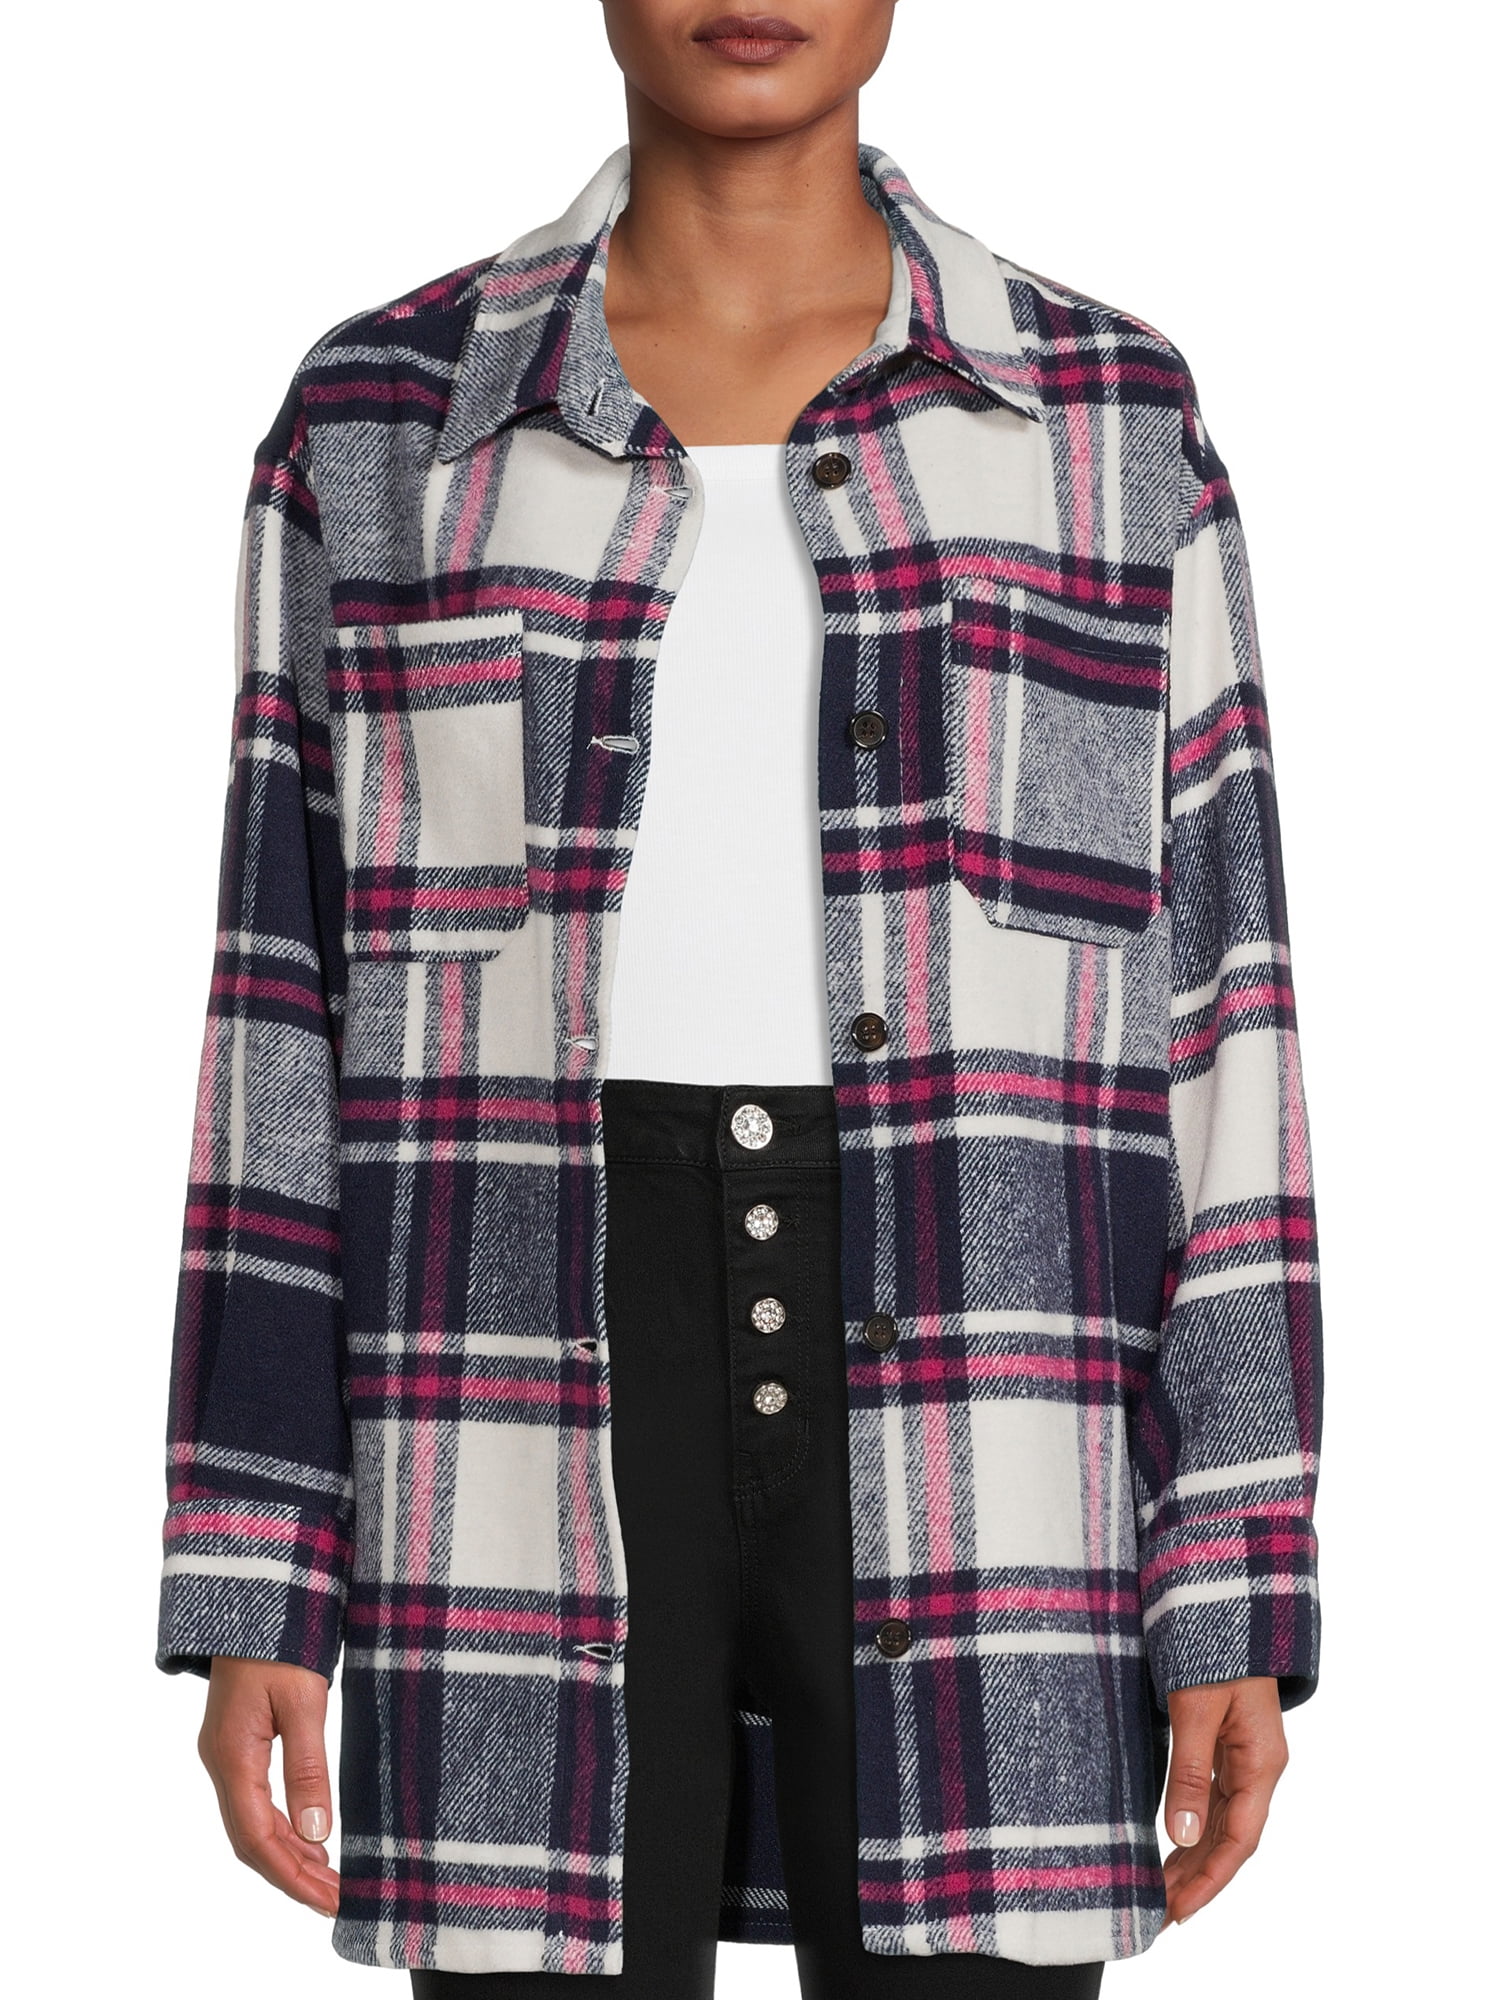 Jason Maxwell Women's Oversized Fleece Shirt Jacket - Walmart.com